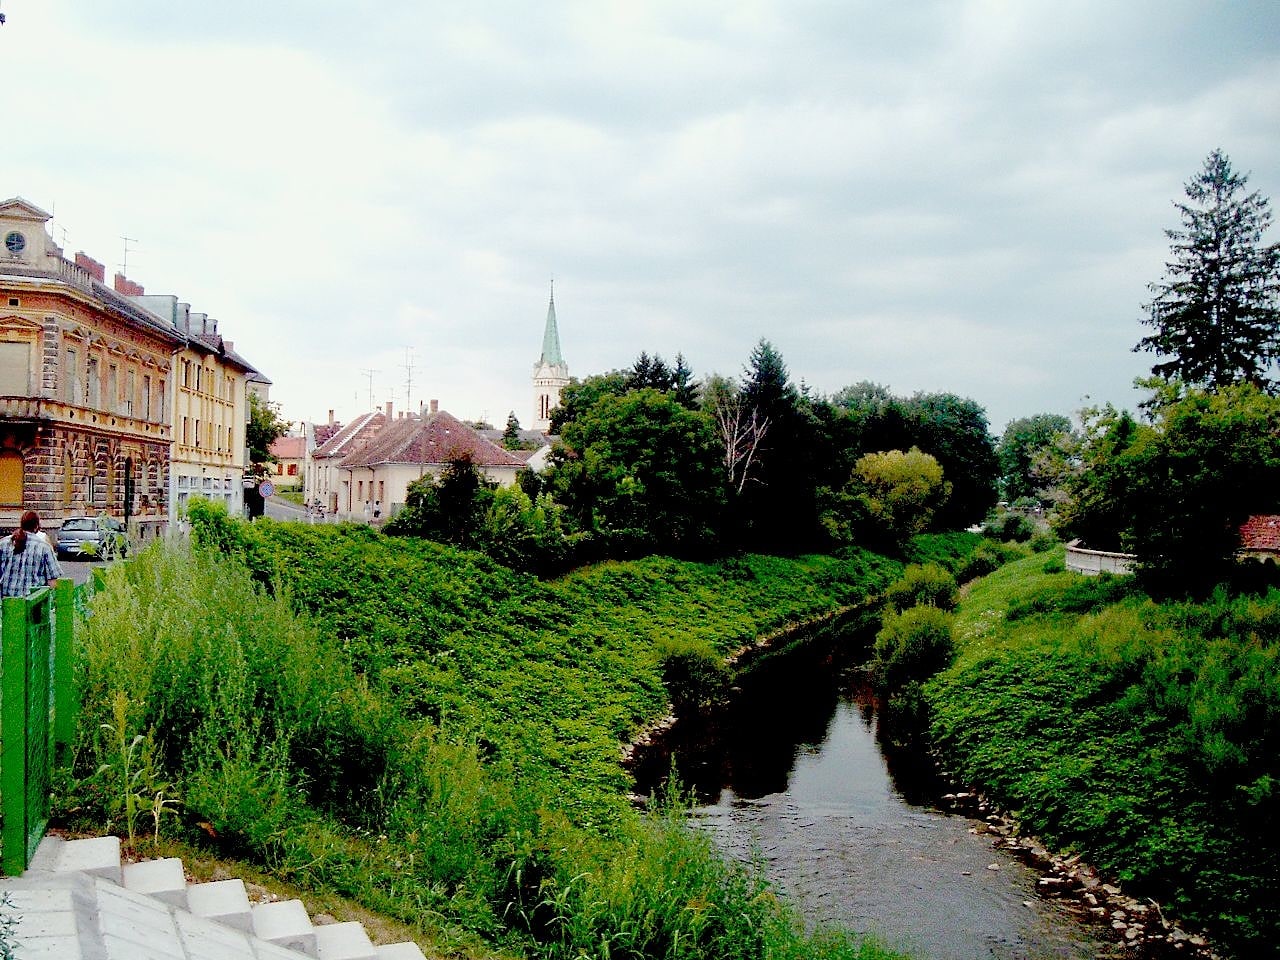 Szentgotthárd, Hungary